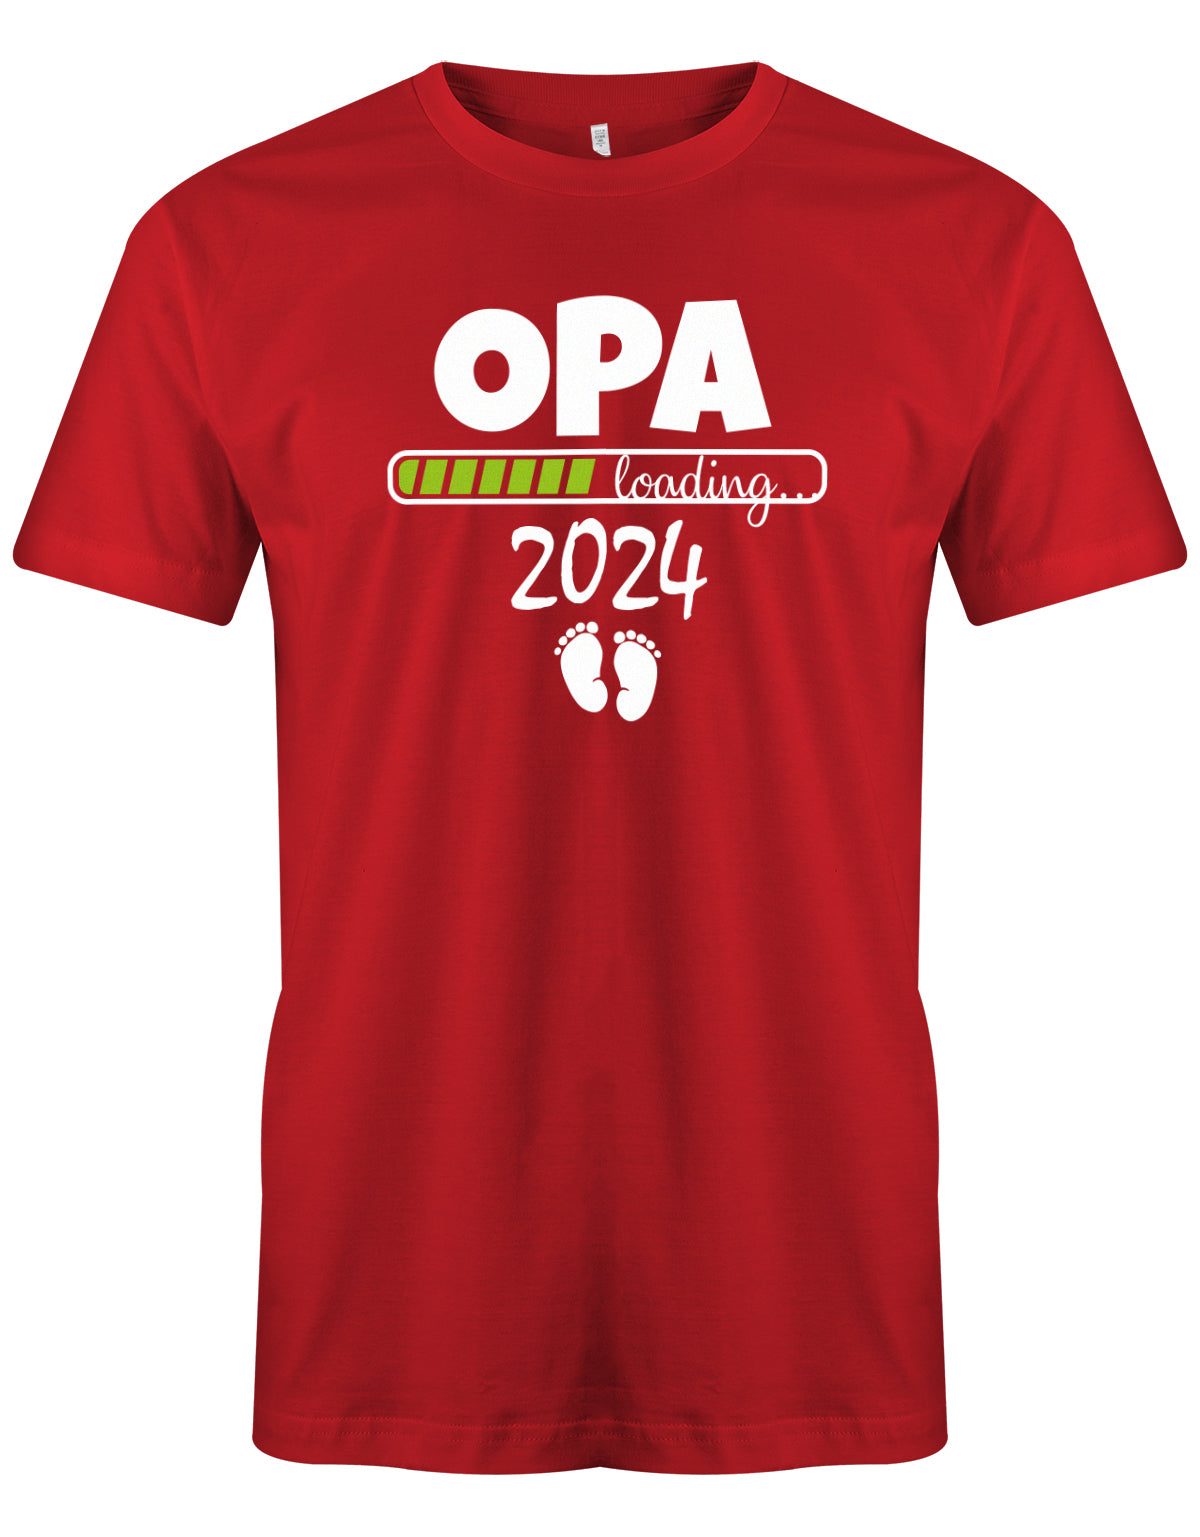 Opa T-Shirt Spruch für werdenden Opa - Opa Loading 2024 Balken lädt. Fußabdrücke Baby.Rot